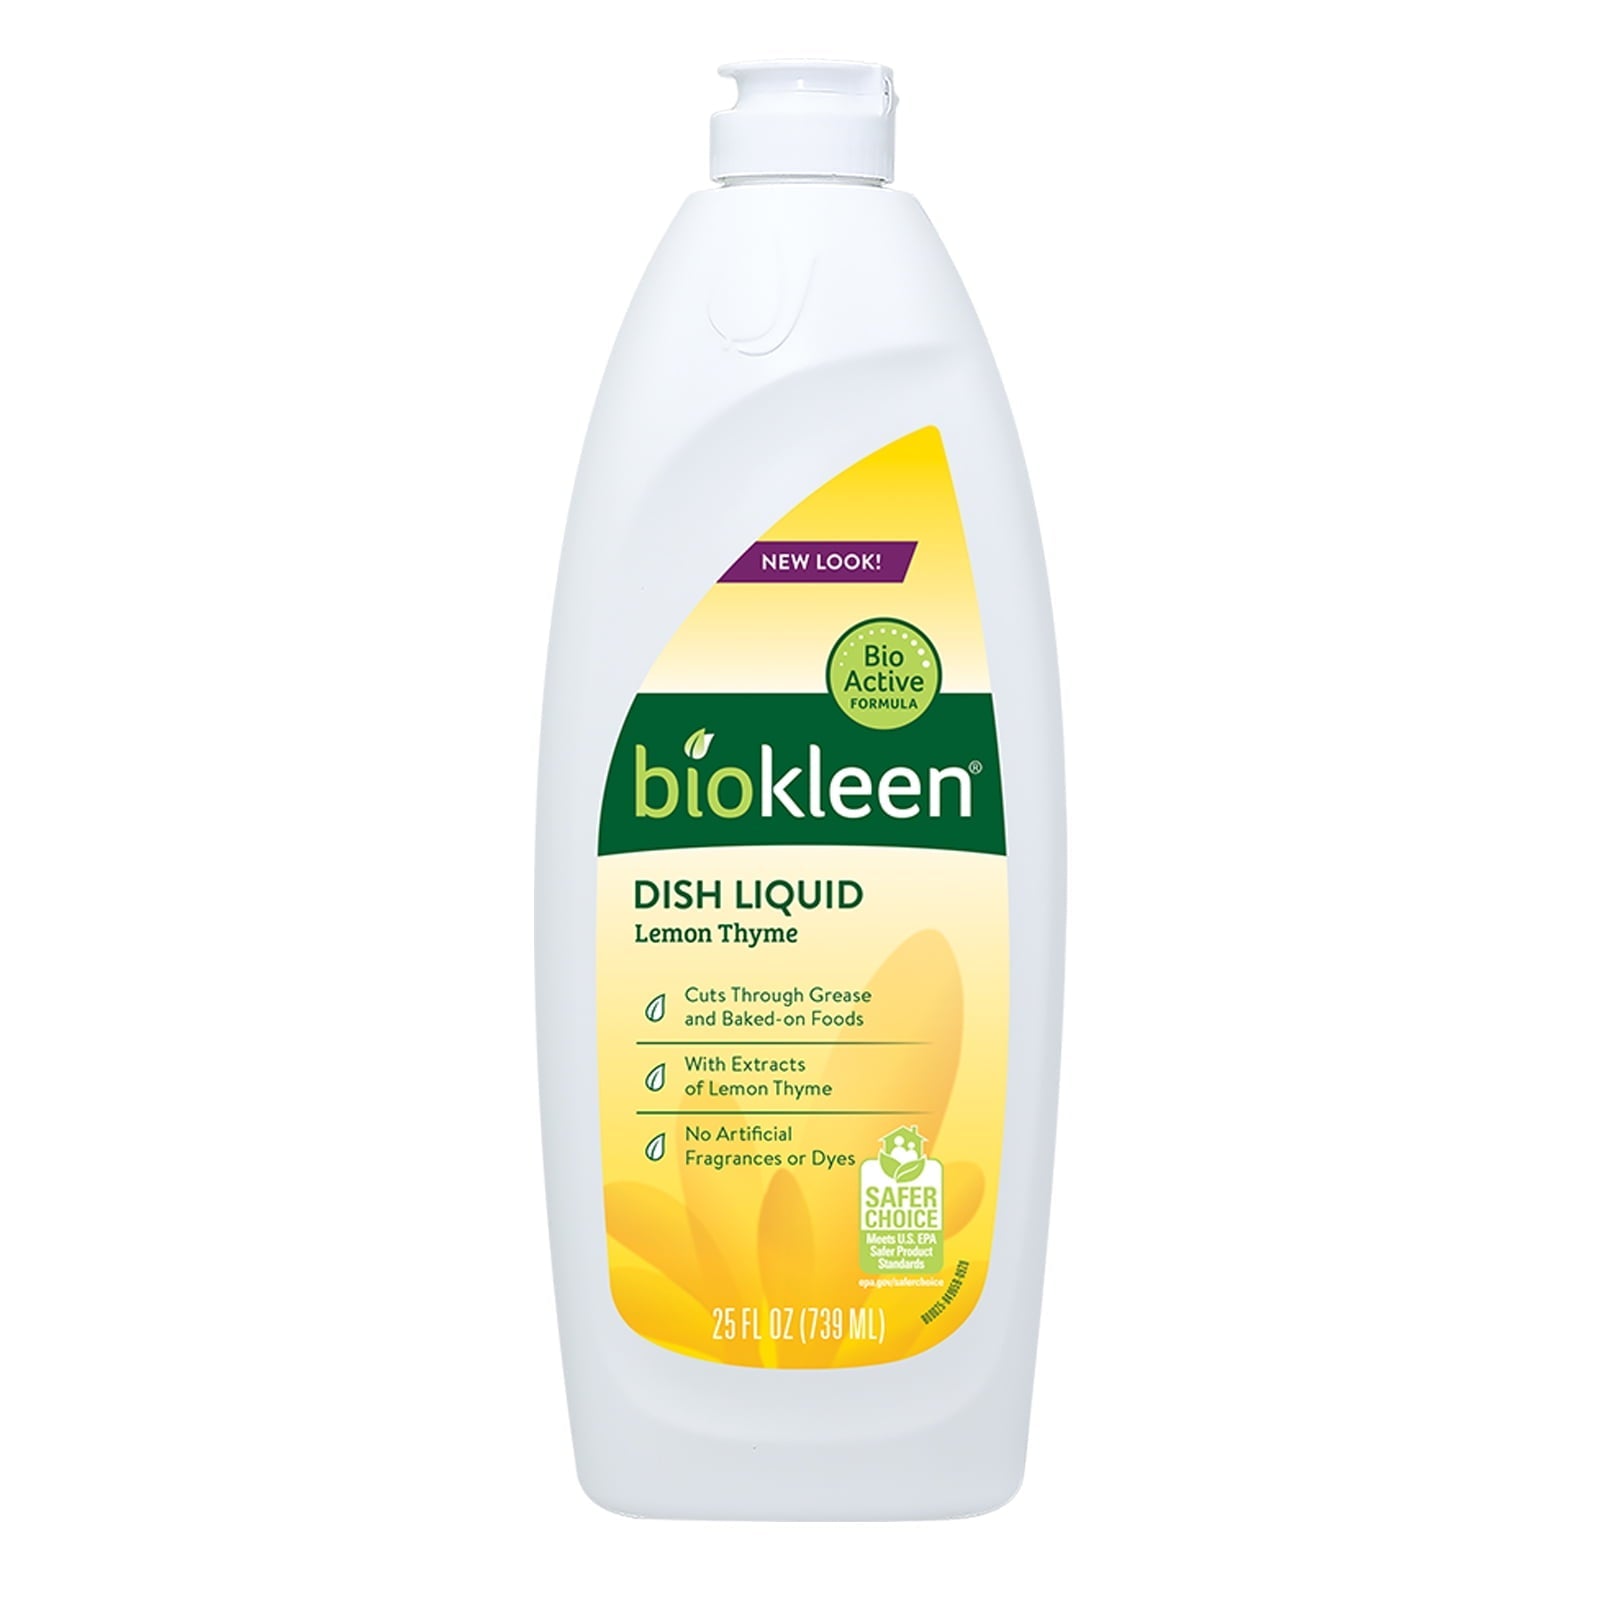 Biokleen Dish Liquid Natural Lemon Thyme 25 oz Bottle